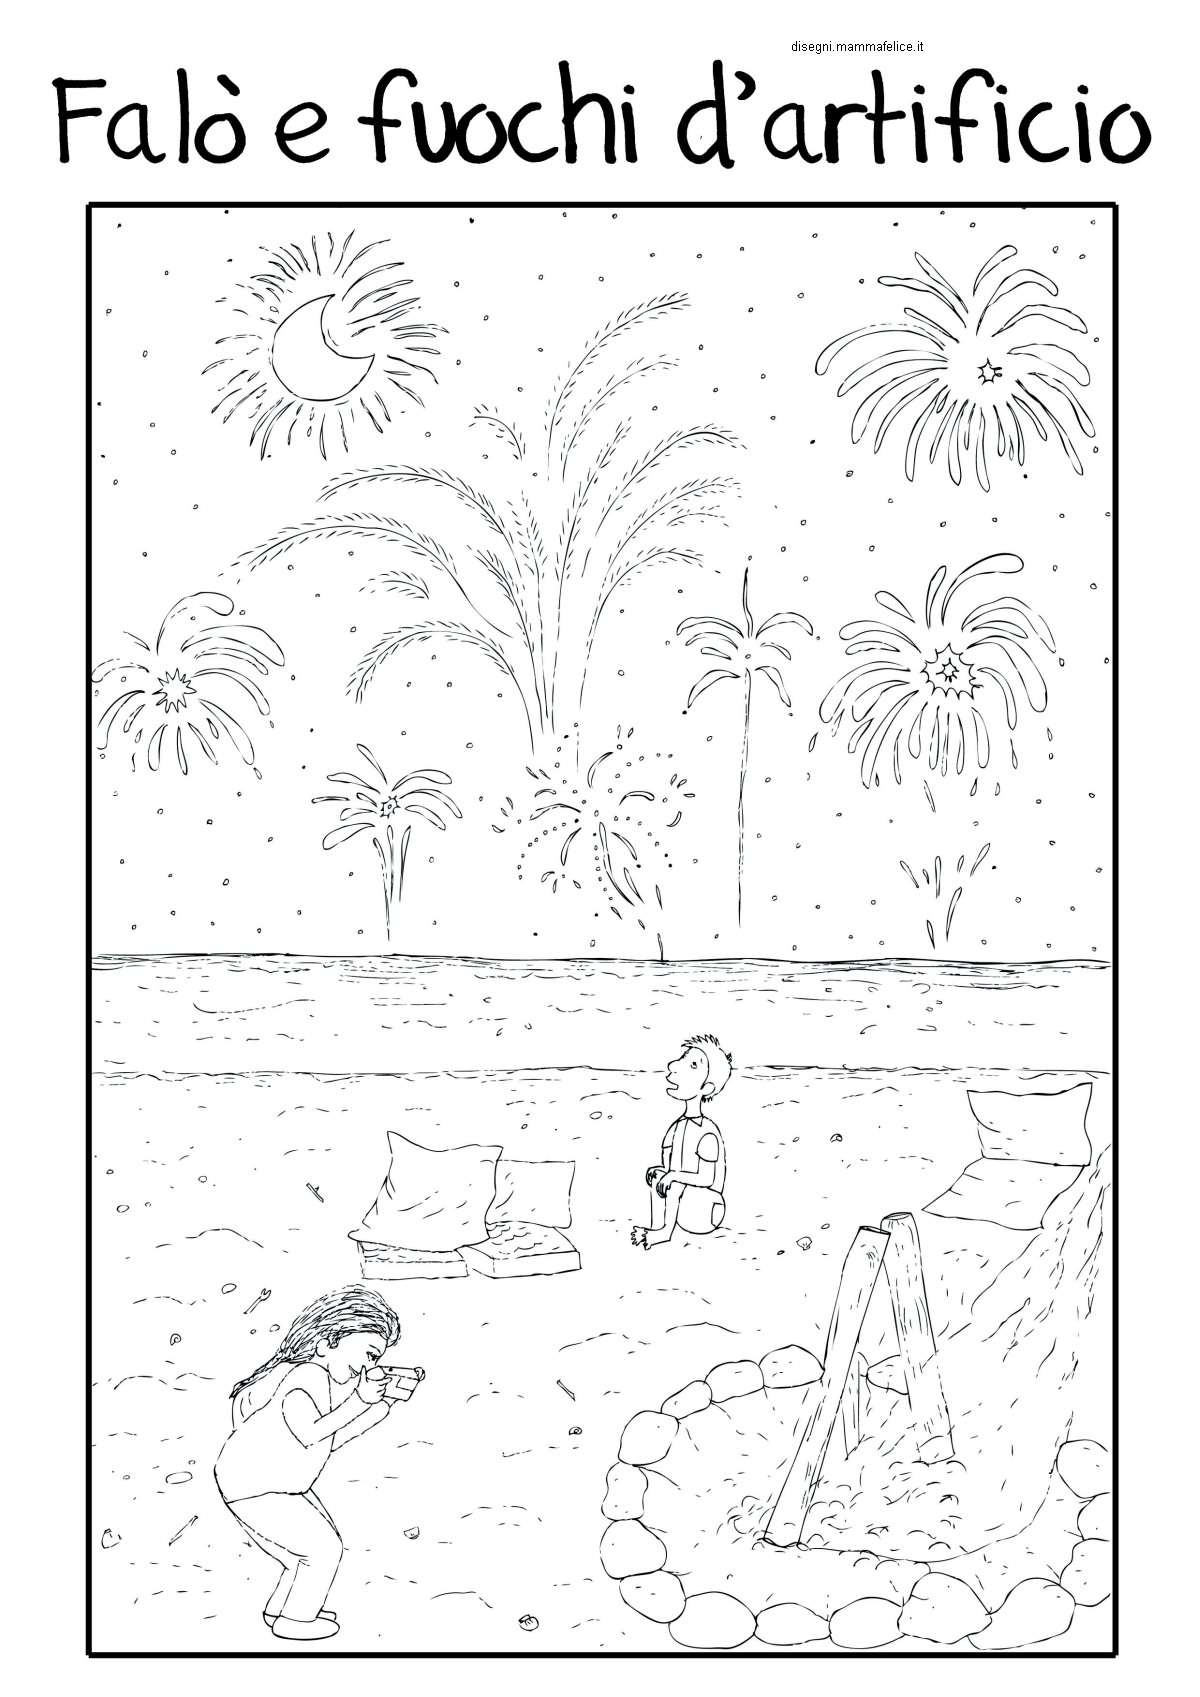 disegni-da-colorare-bambini-vacanze-fuochi-artificiali-falo-estate-mare-spiaggia